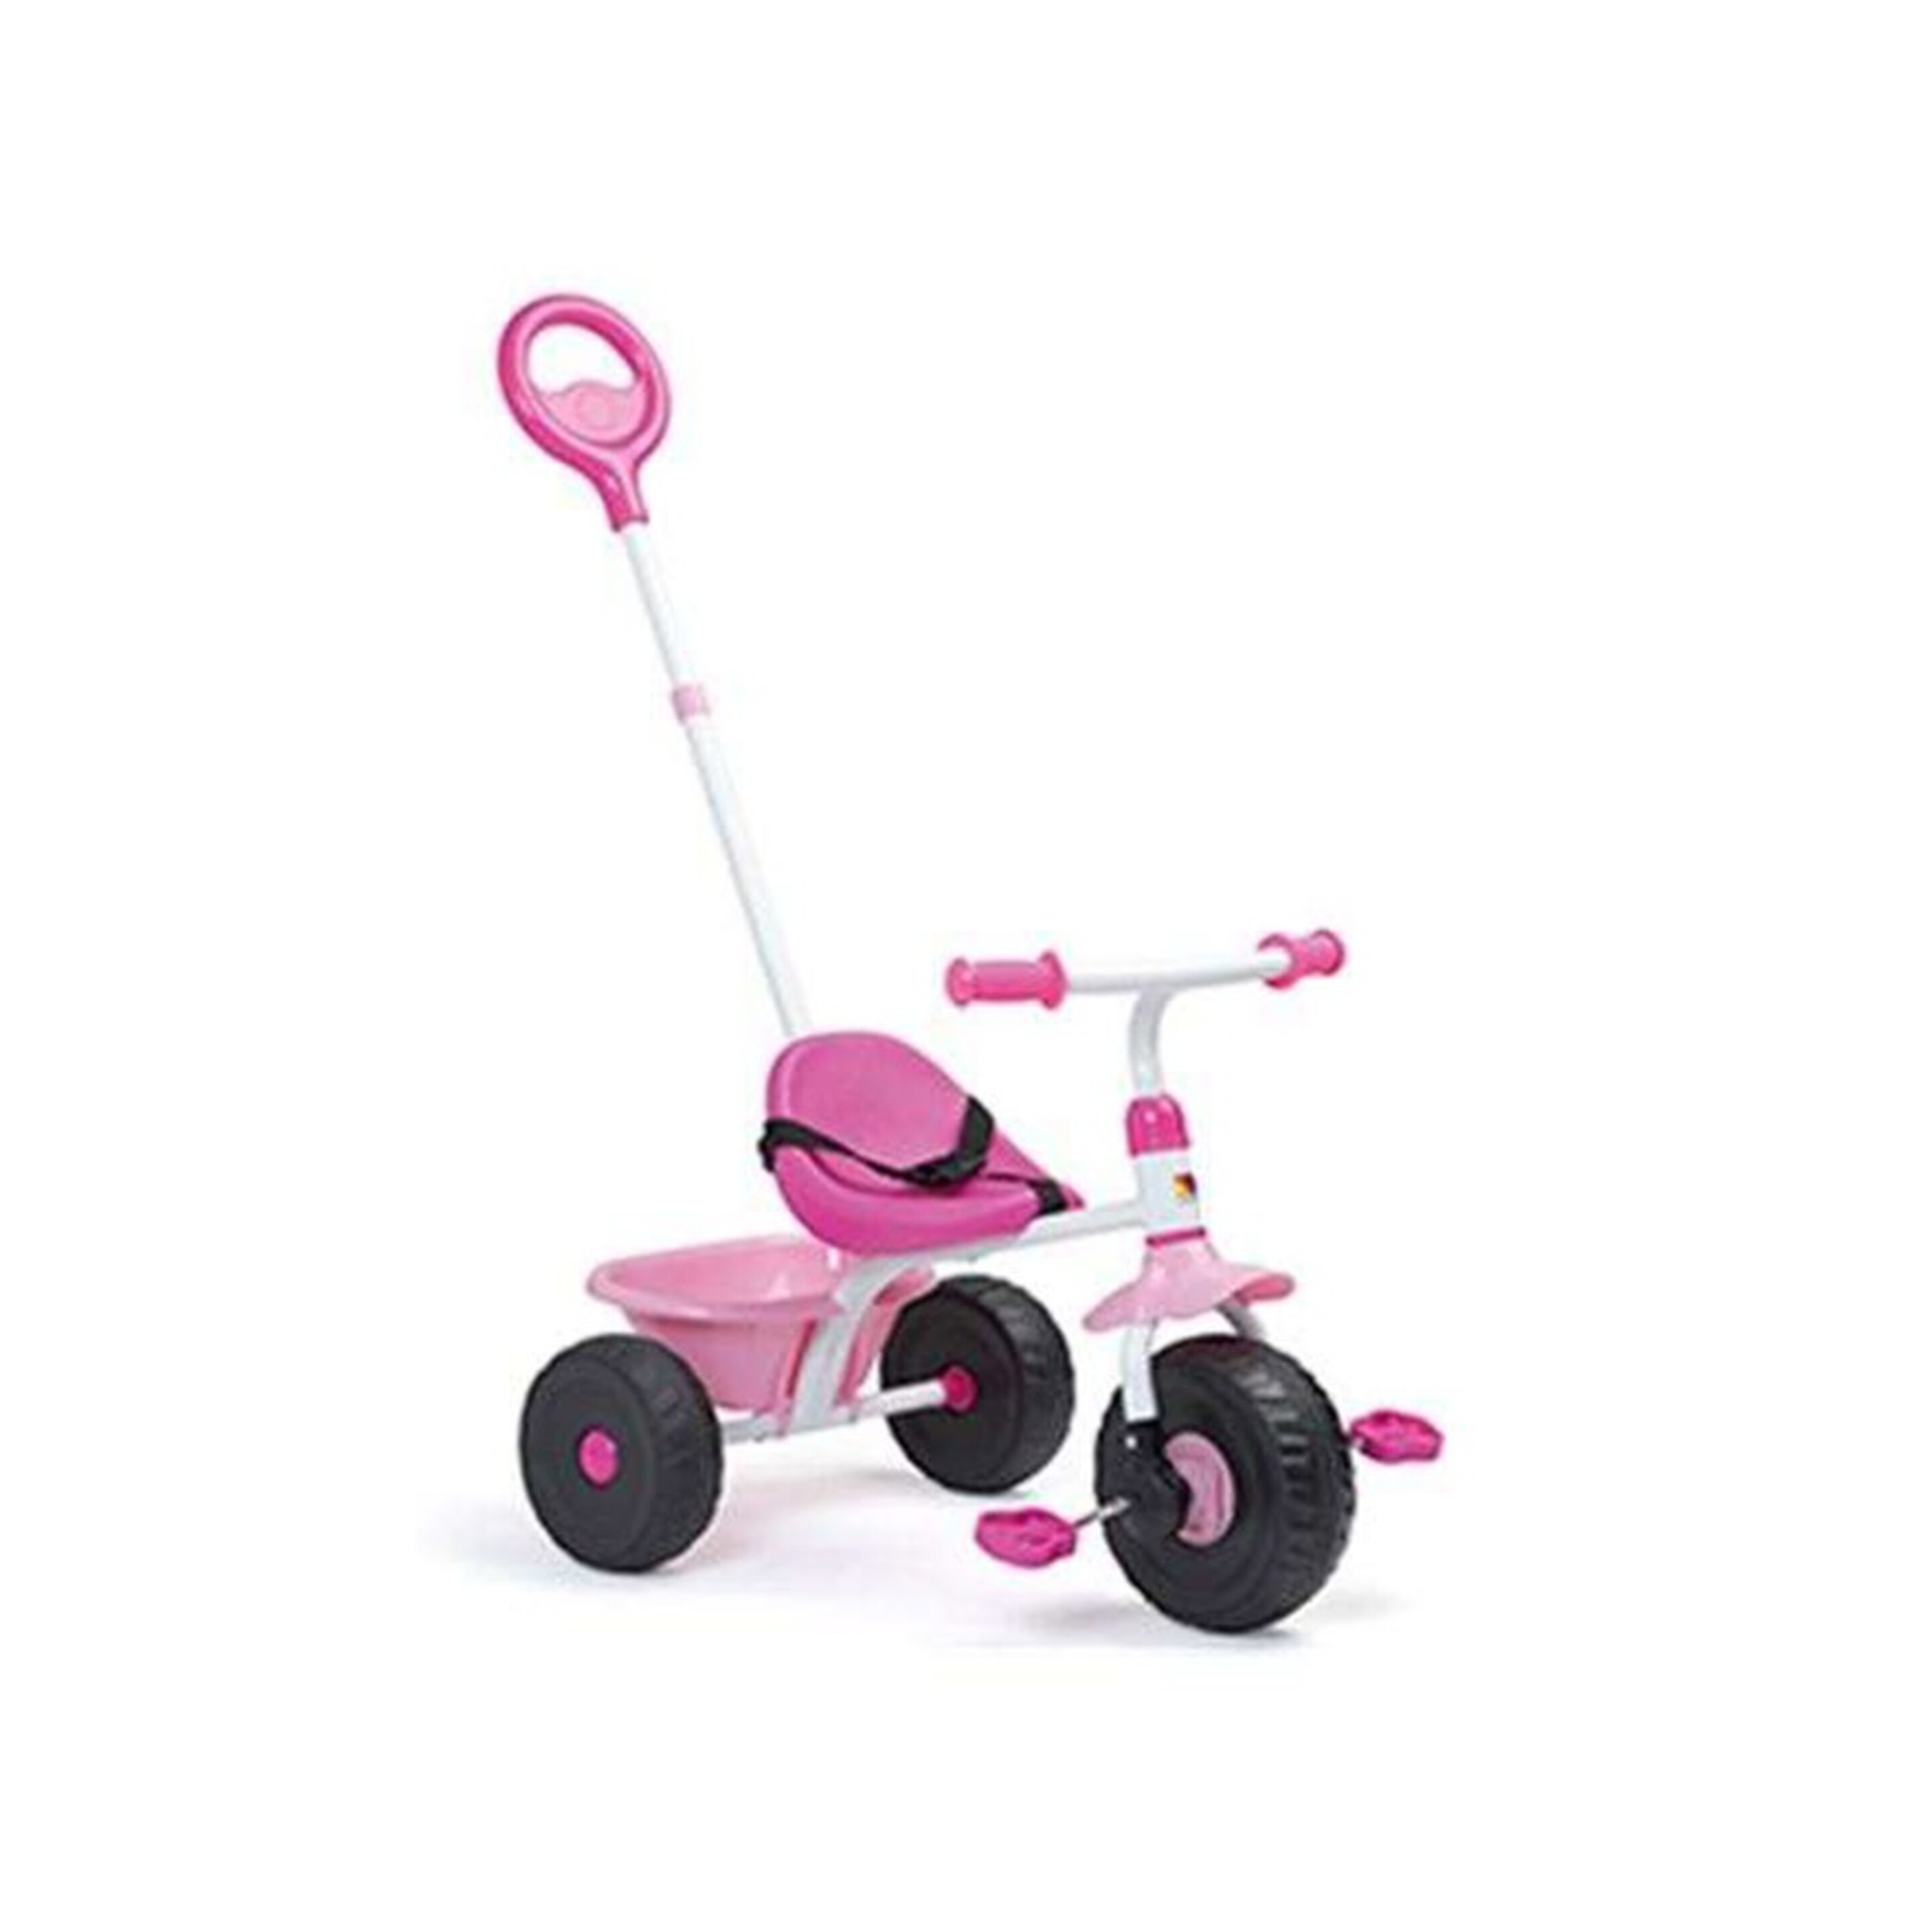 Triciclo Urbano Rosa Para Bebé - Multicolor  MKP